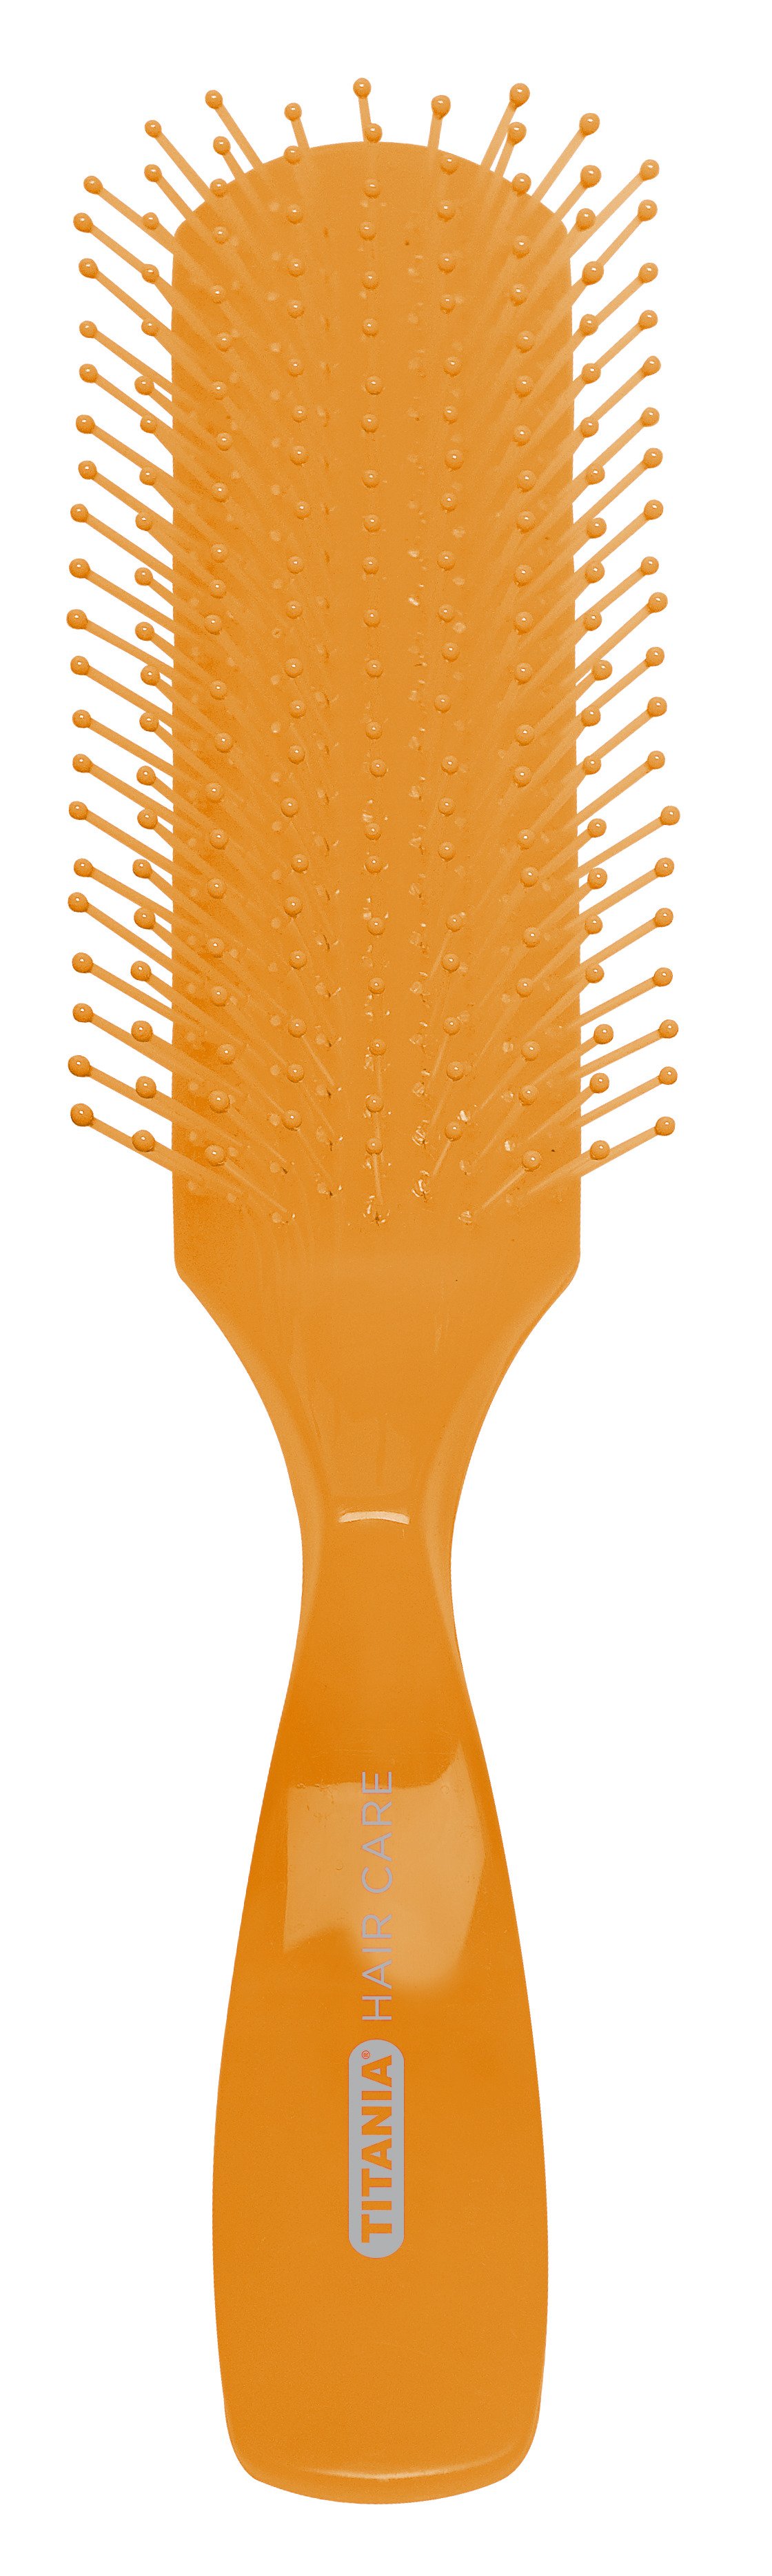 Щетка для волос Titania массажная, 9 рядов, оранжевый (1830 оранж) - фото 1